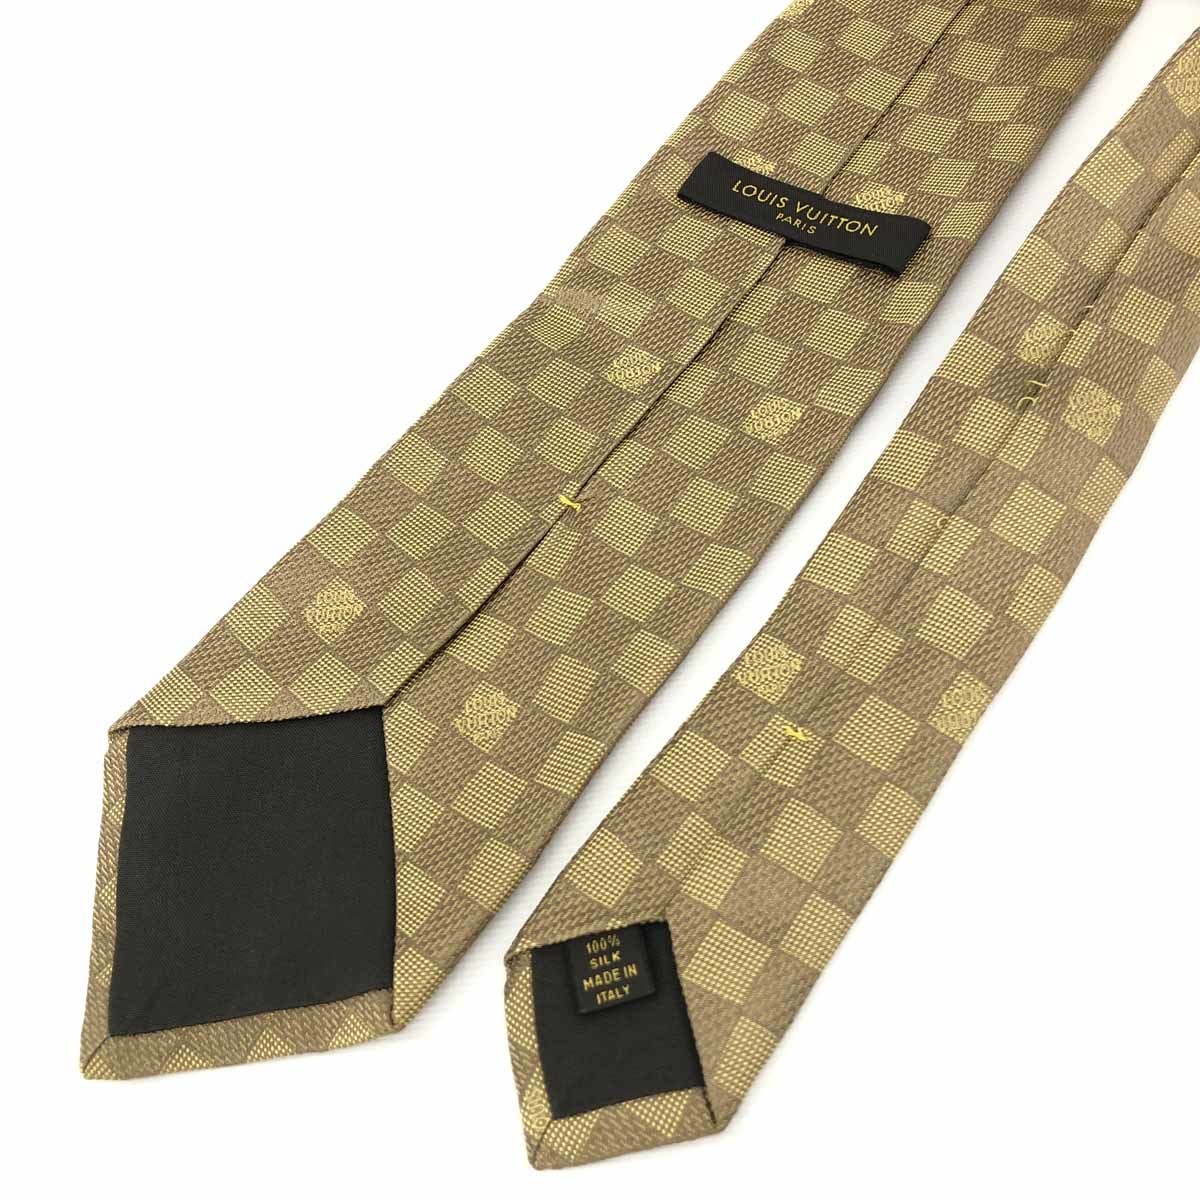 LOUIS VUITTON ルイヴィトン ネクタイ ゴールドカラー/ブラウン/イエロー シルク100％ ダミエ柄 メンズ 絹 スーツ 紳士 服飾小物